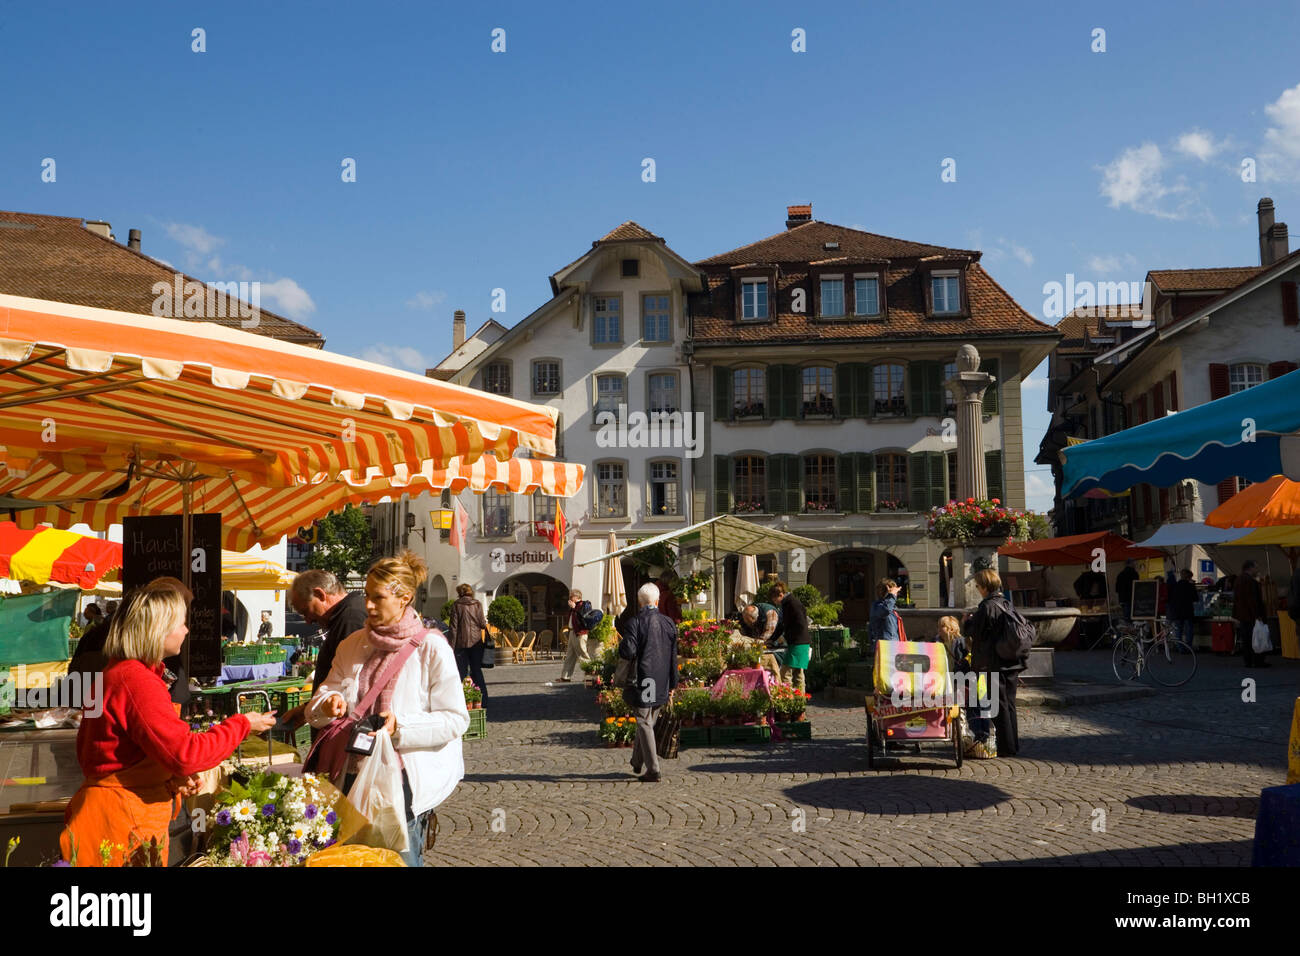 Samstagsmarkt in Rathausplatz, Thun (größte Garnison Stadt der Schweiz),  Berner Oberland (Hochland), Kanton Bern Stockfotografie - Alamy